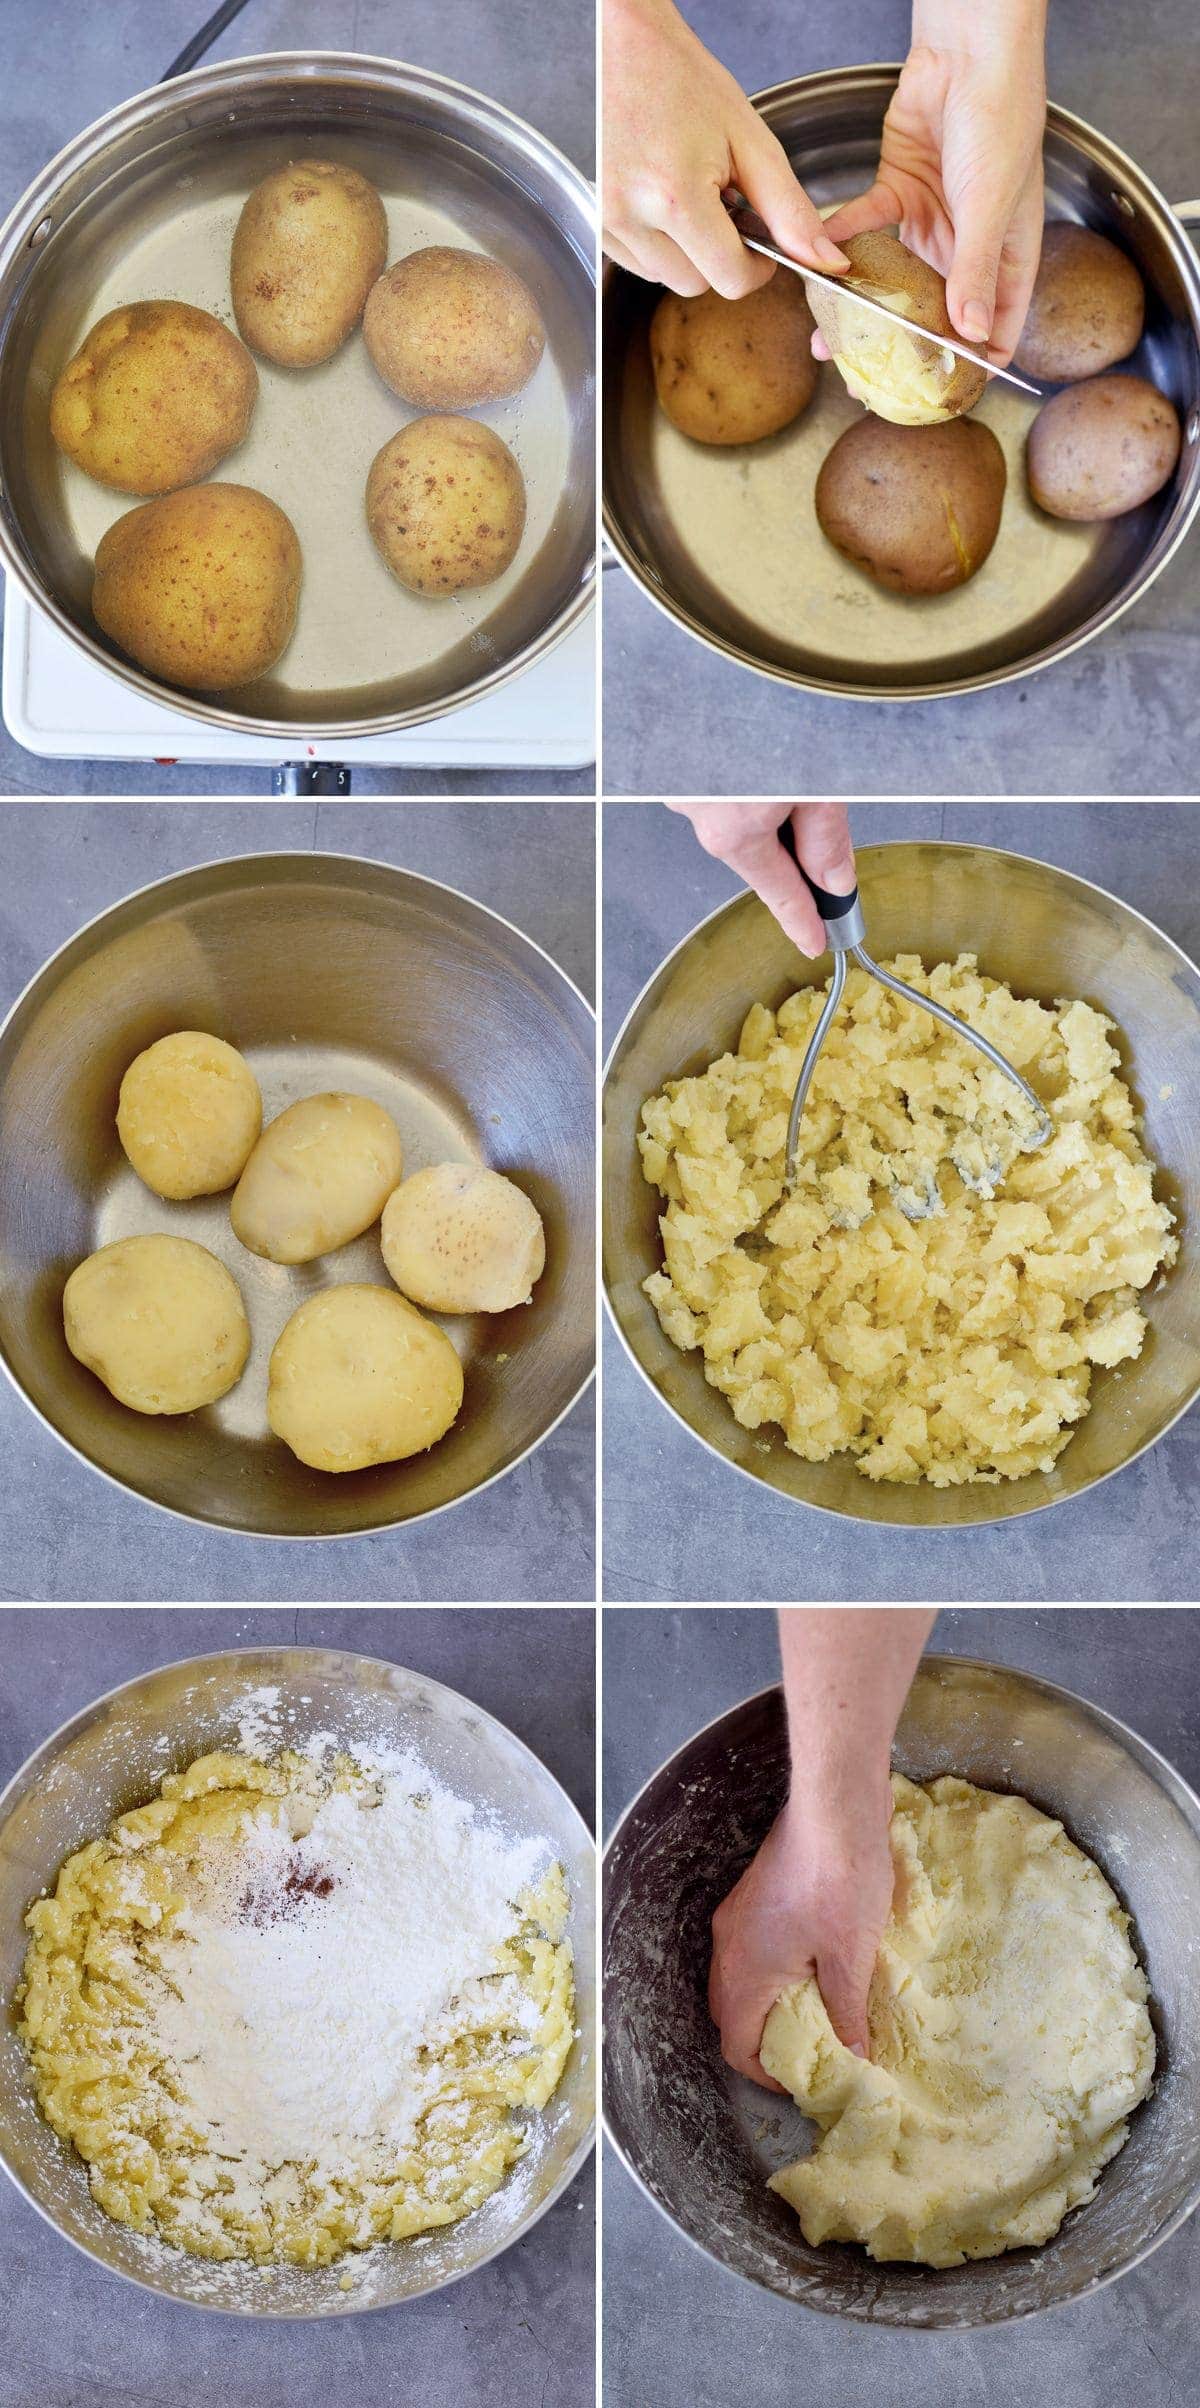 6 Schritt-für-Schritt-Fotos, die zeigen, wie man Kartoffeln kocht und stampft